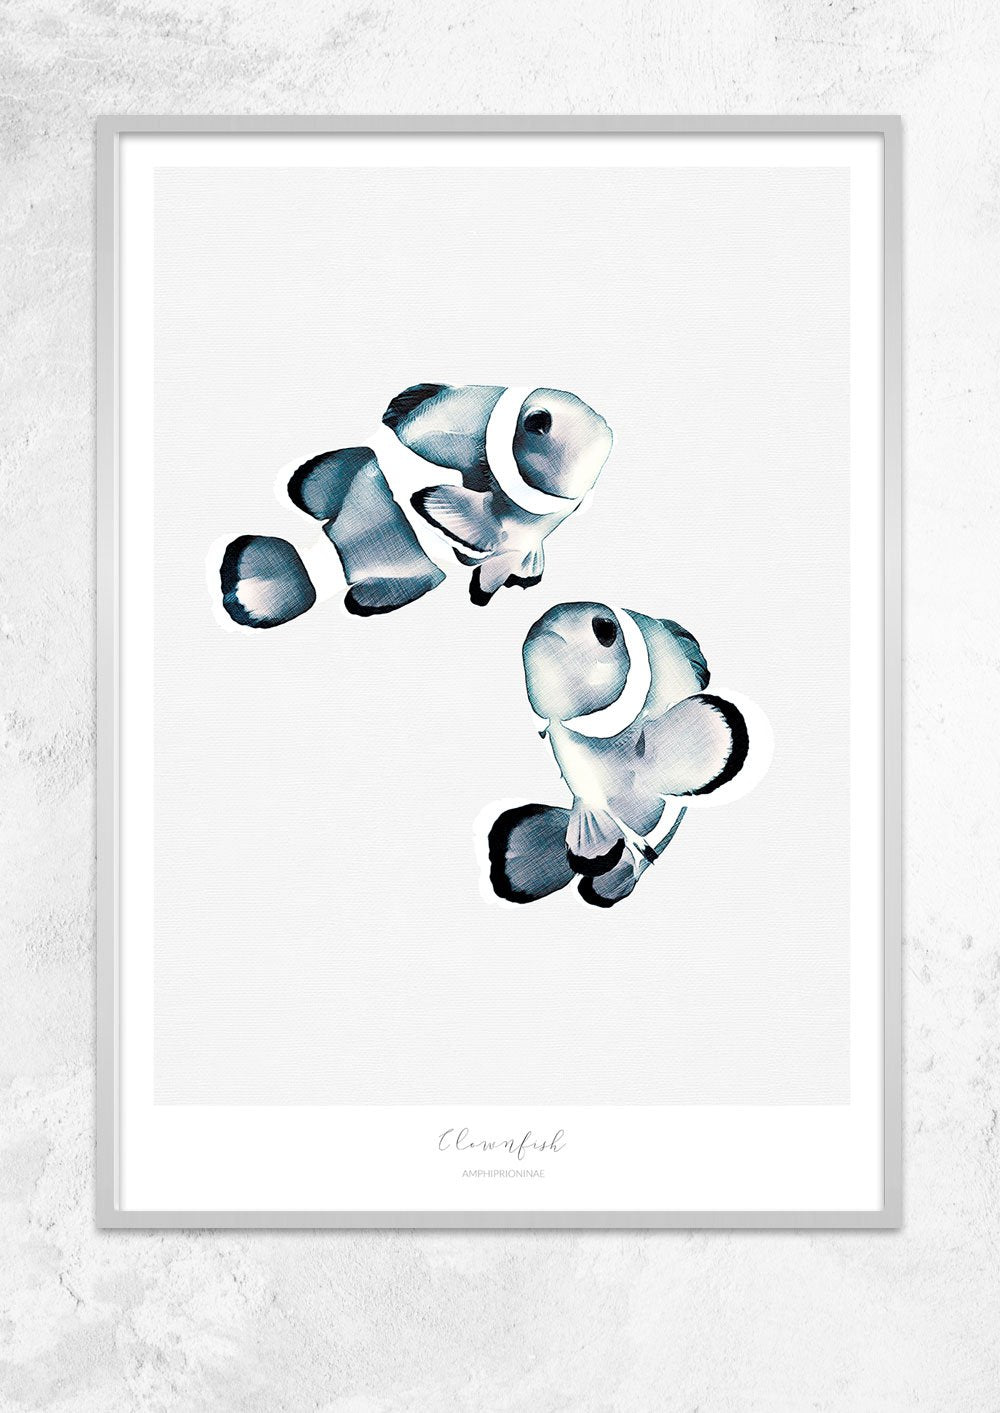 Marine Life Series - Clownfish